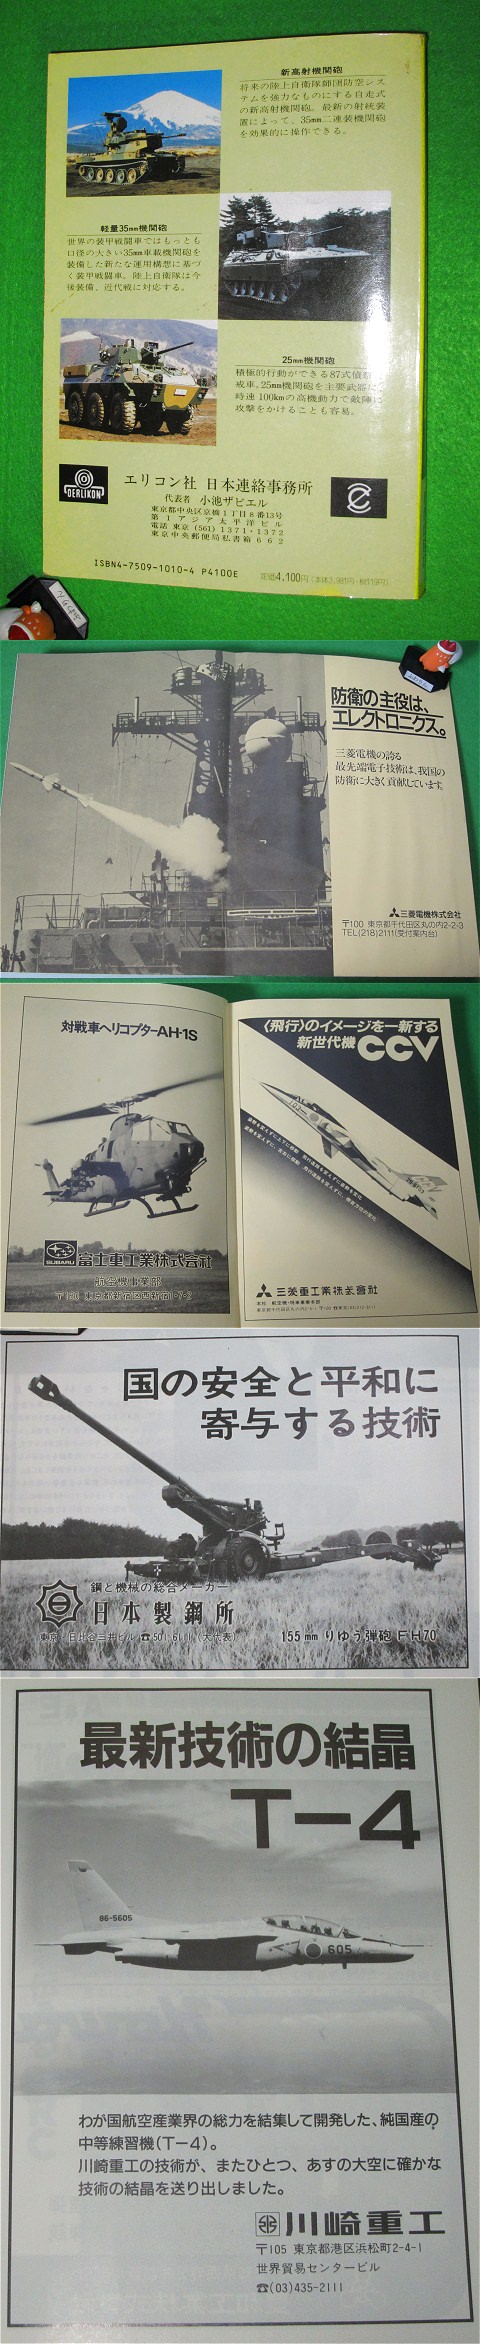 ↑ 1989年版の自衛隊装備年鑑に掲載されていた広告群